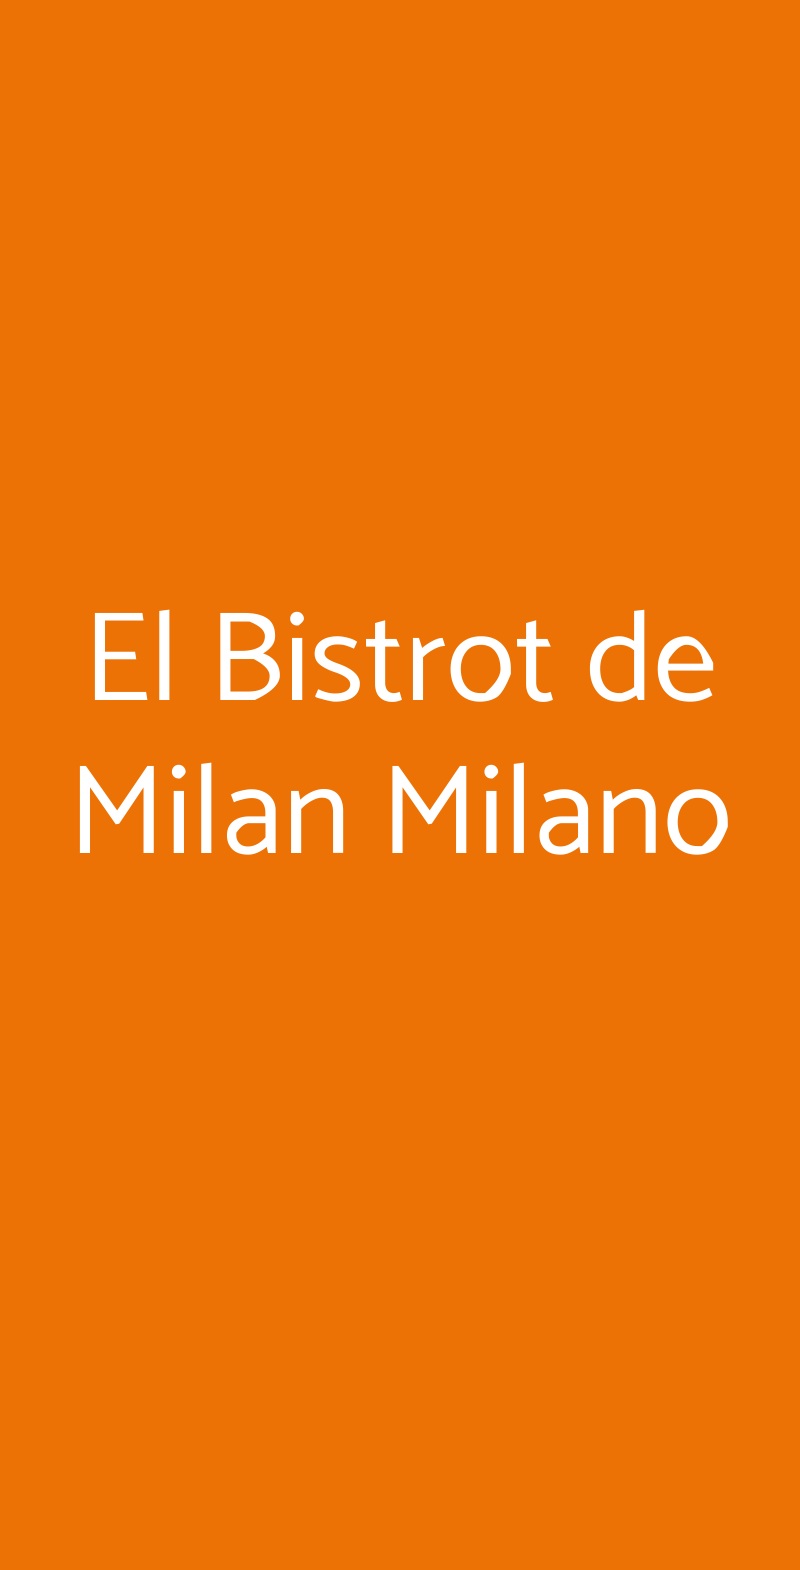 El Bistrot de Milan Milano Milano menù 1 pagina